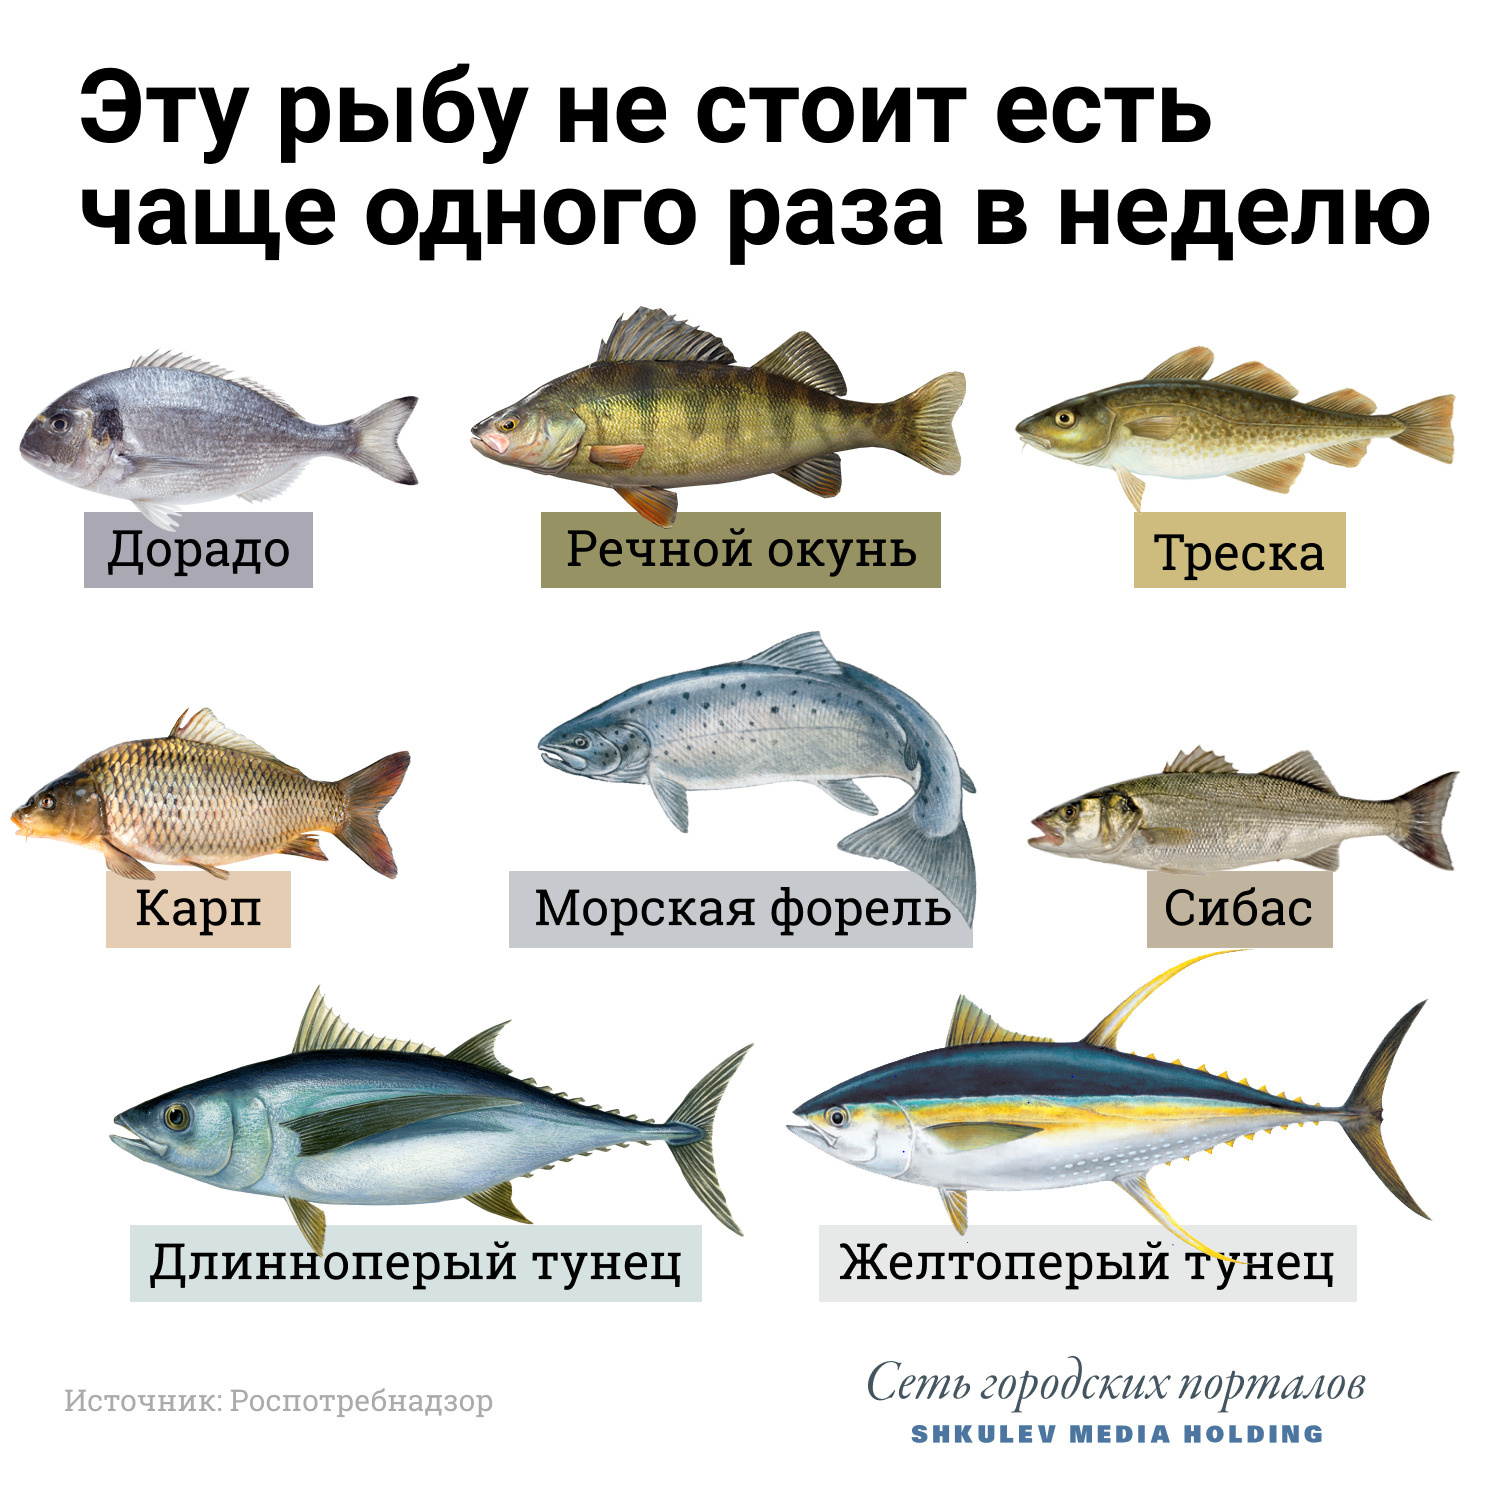 Некоторые виды морской рыбы с высокой калорийностью